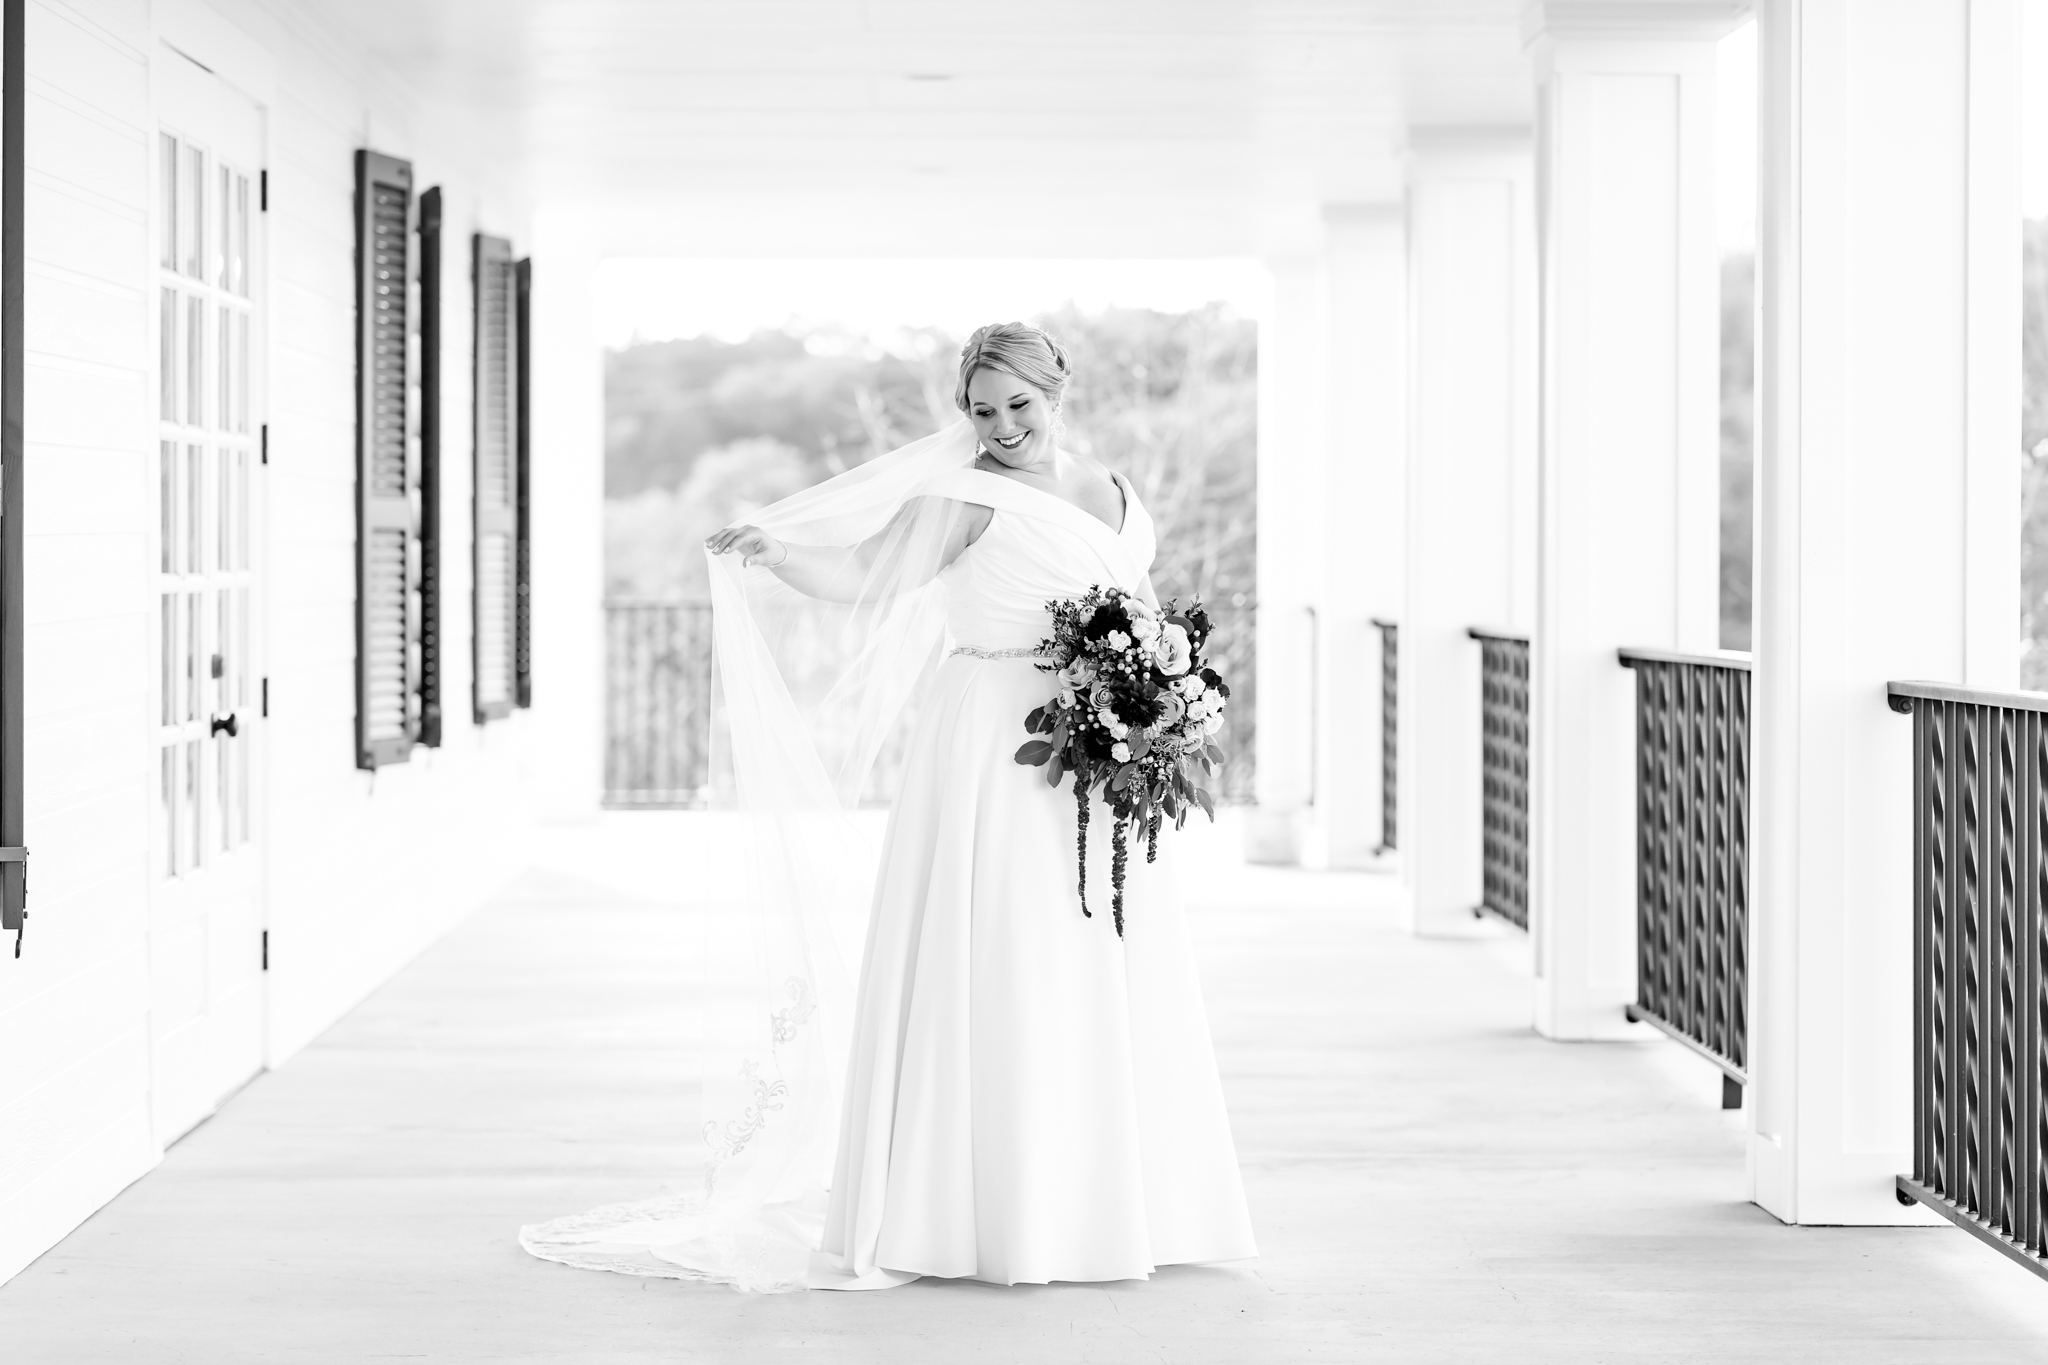 Bridal Session at Kendall Point in Boerne, TX by Dawn Elizabeth Studios, San Antonio Wedding photographer